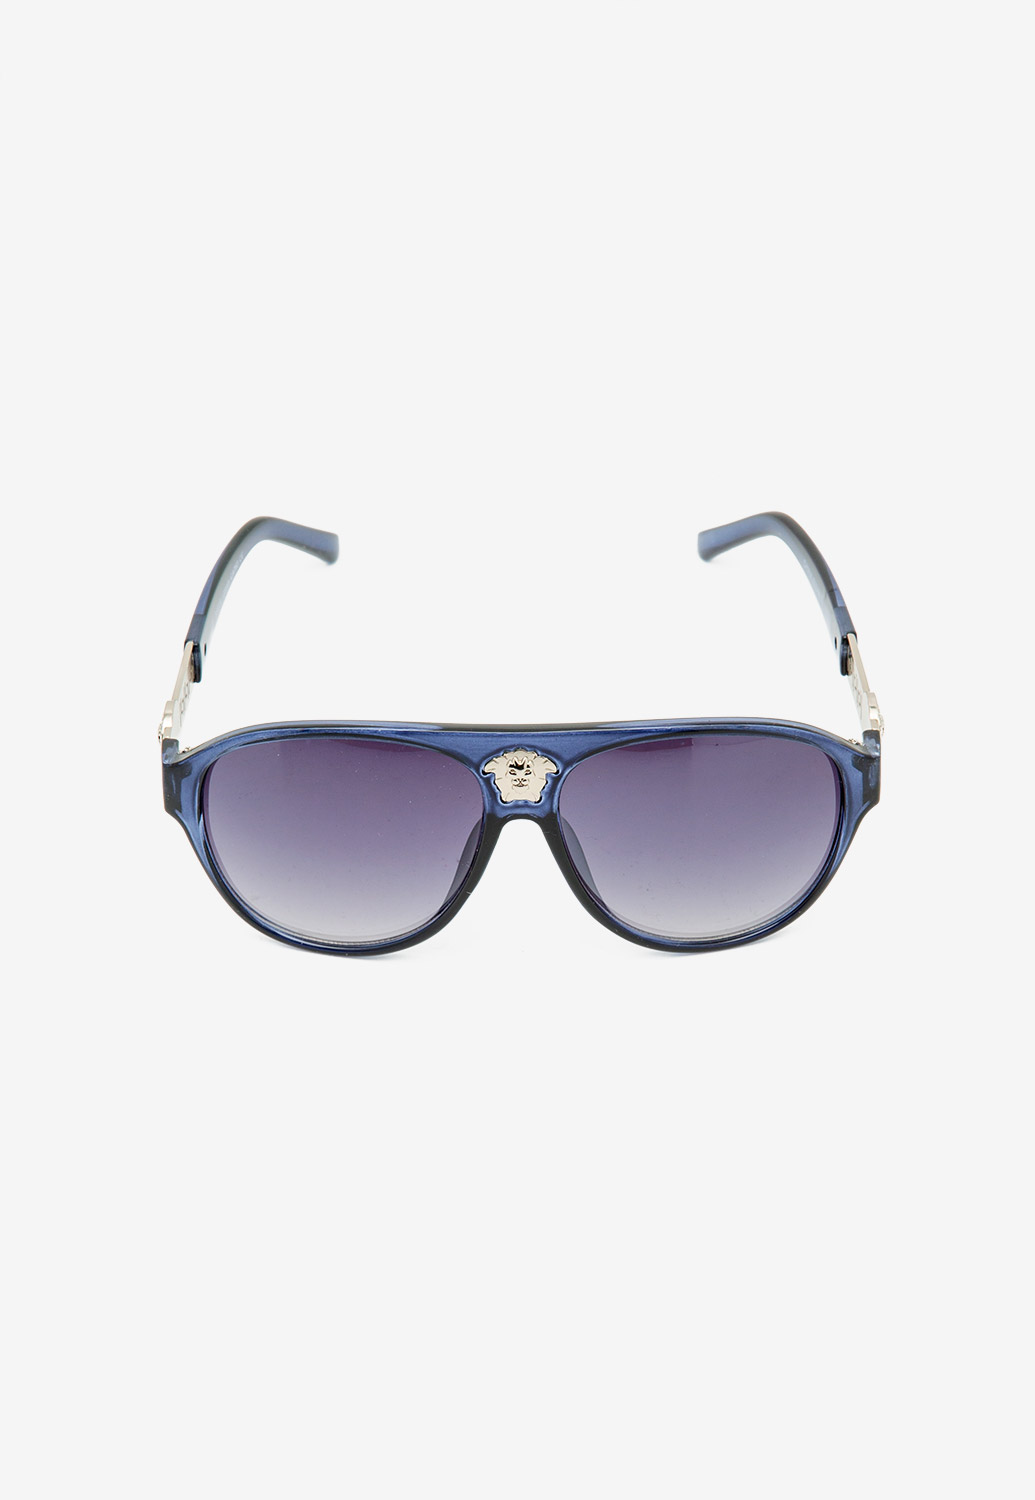 Retro Square Summer Sunglasses 